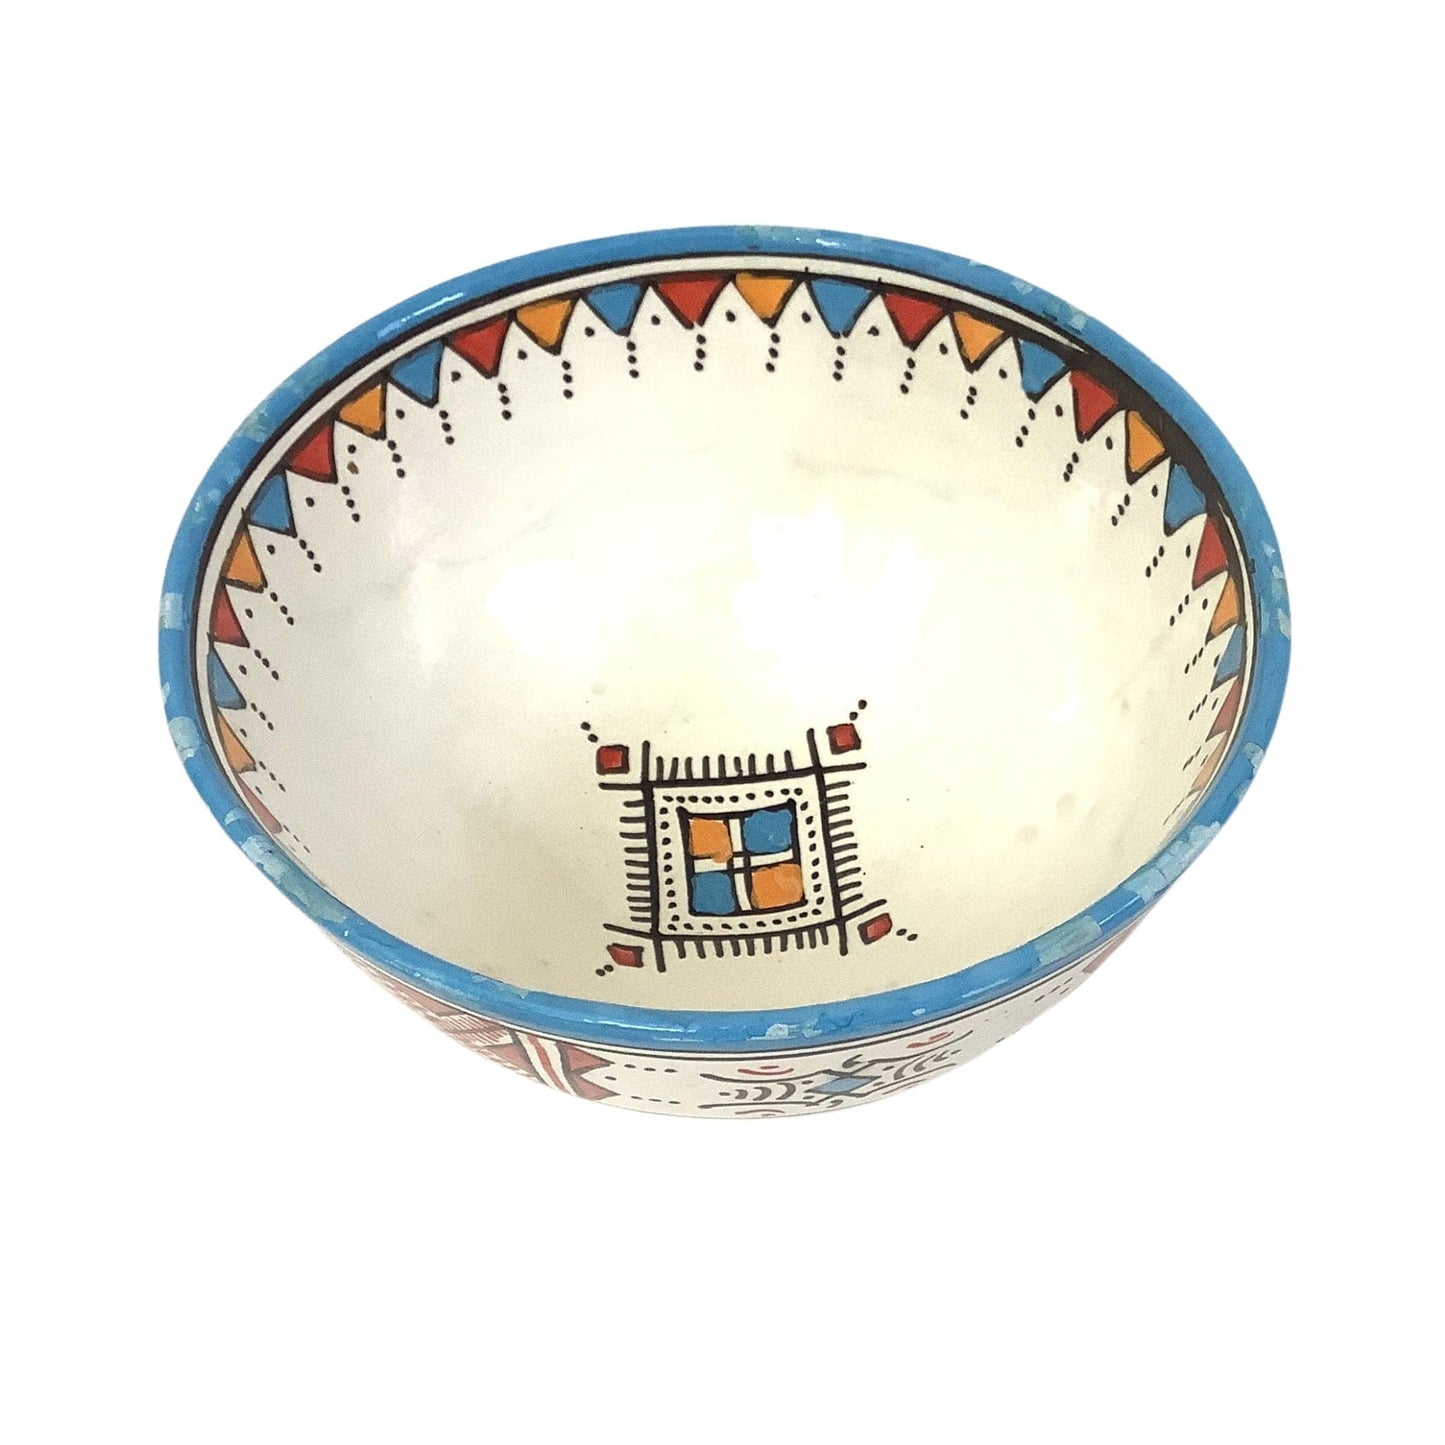 Ethnic Ceramic Bowl Multi / Ceramic / Vintage 1990s